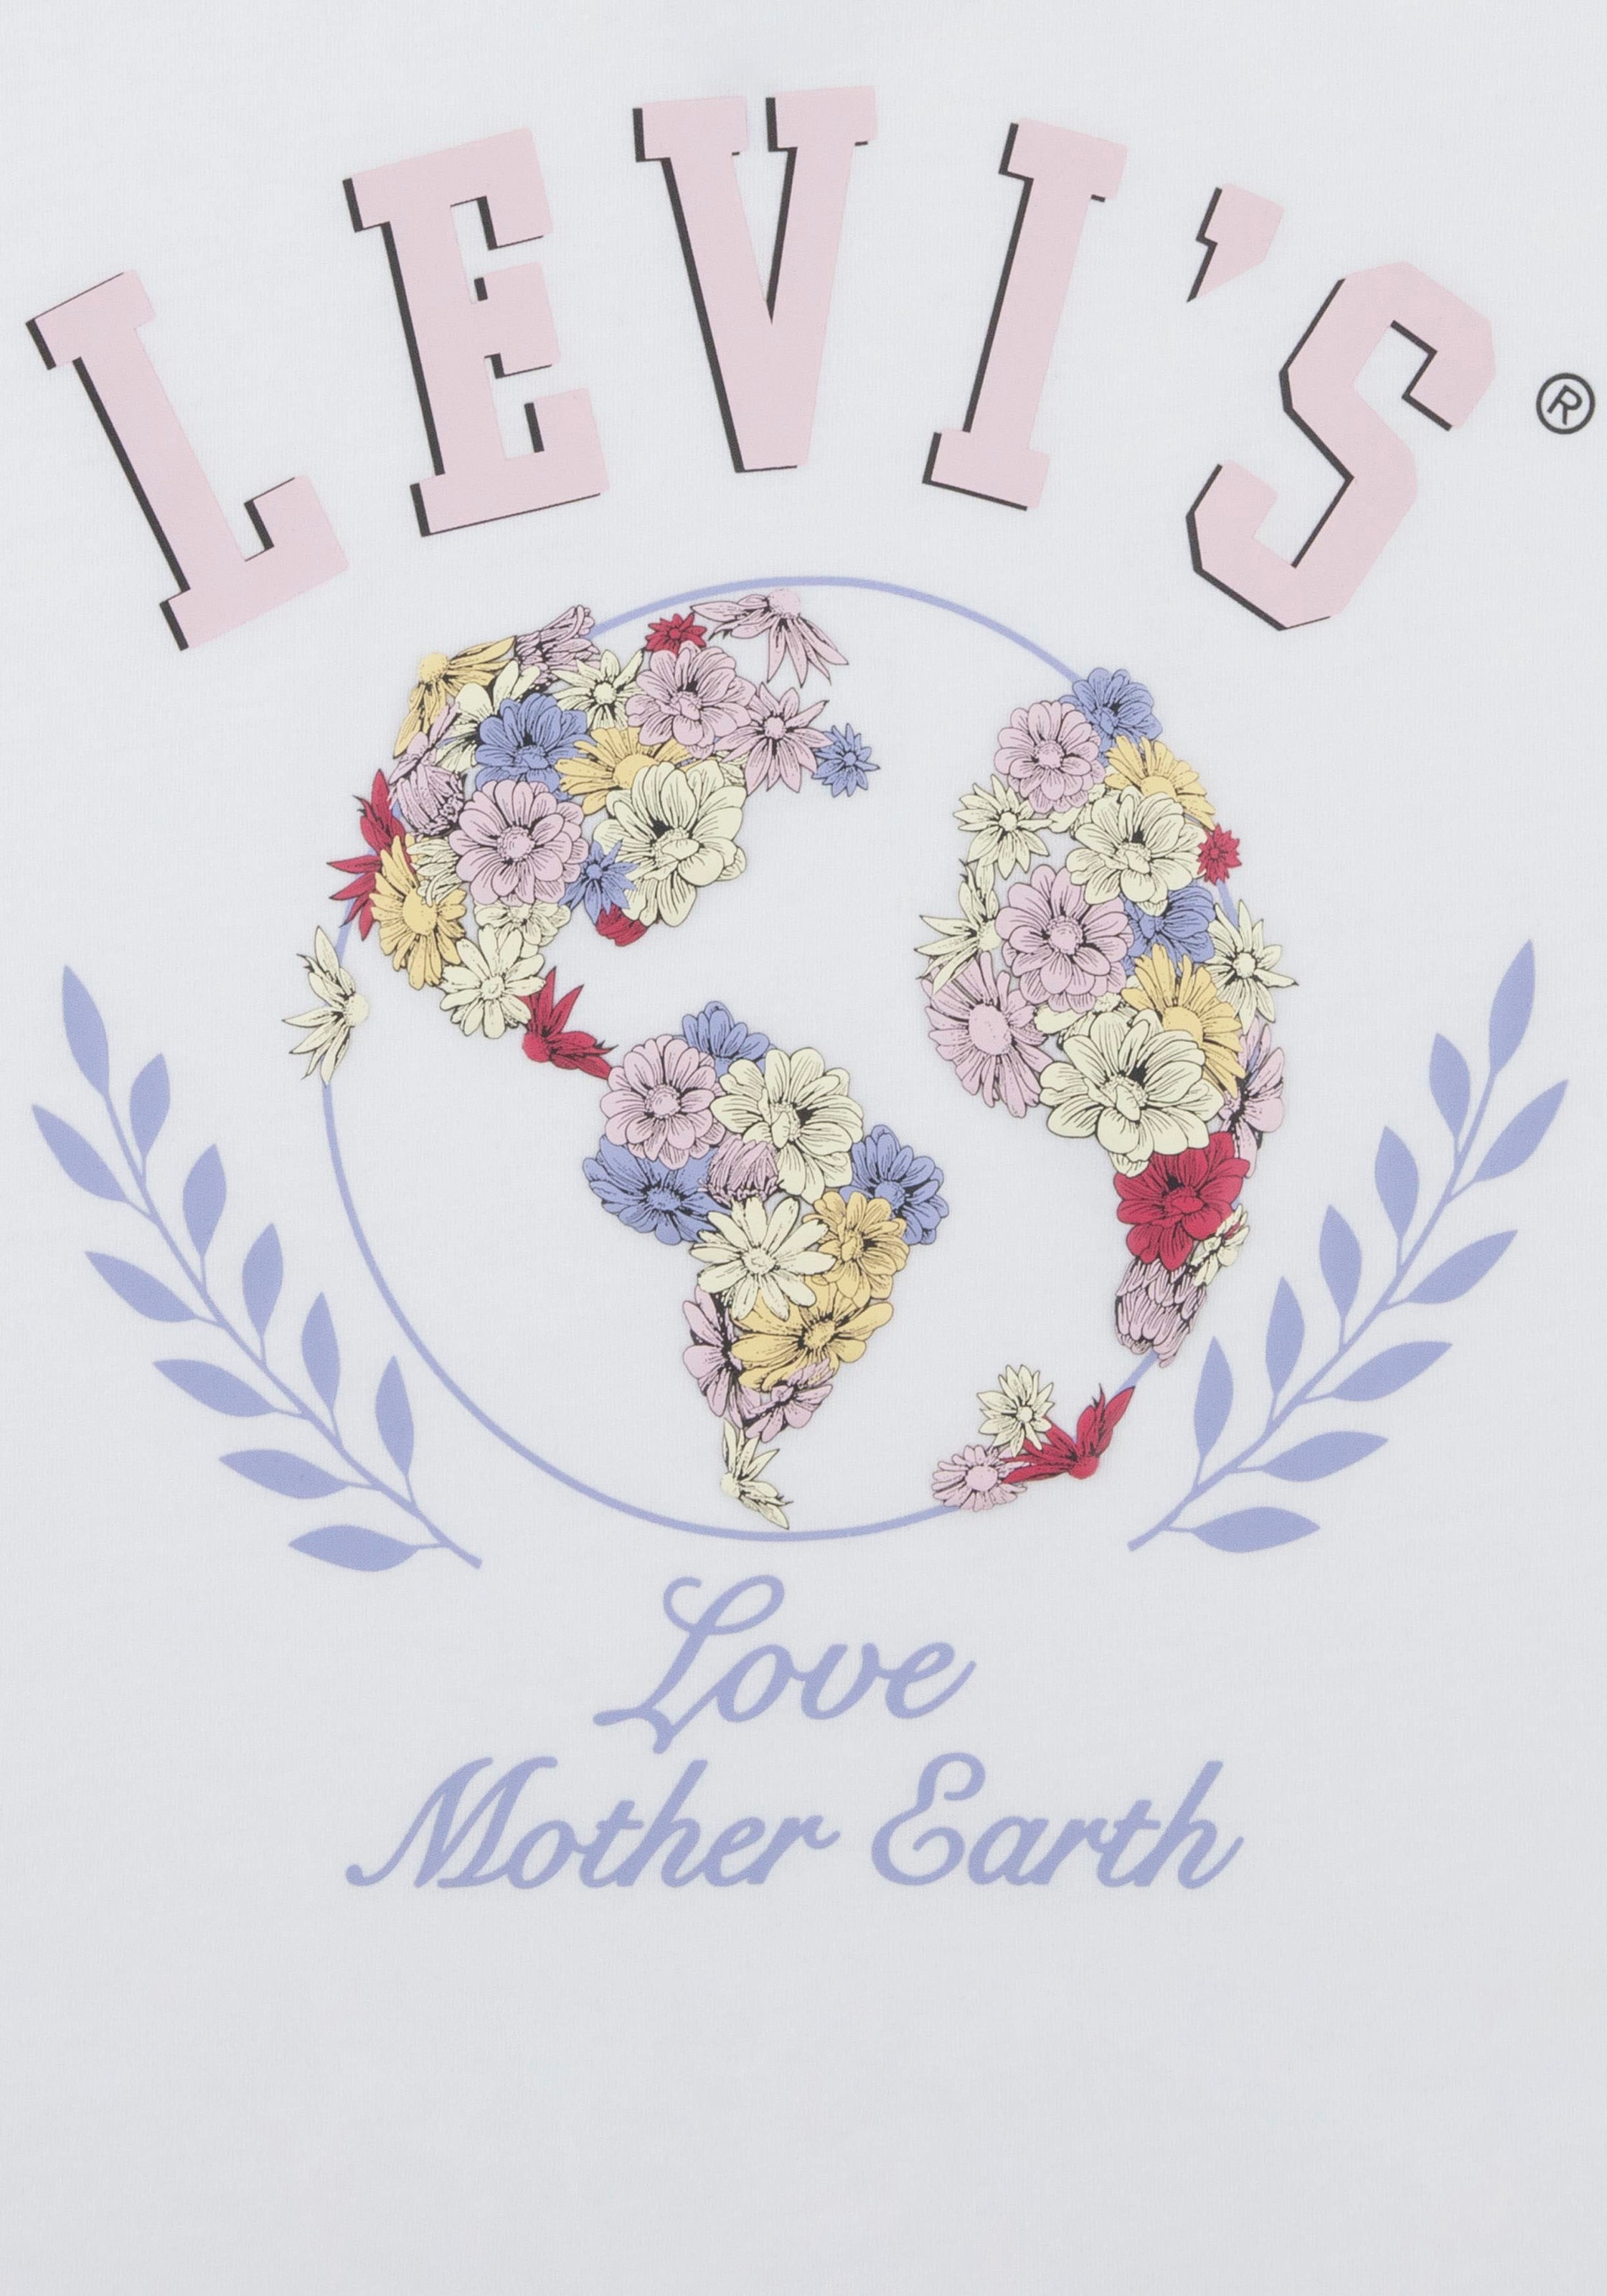 Levi's® Kids T-Shirt »LVG EARTH OVERSIZED TEE«, for GIRLS